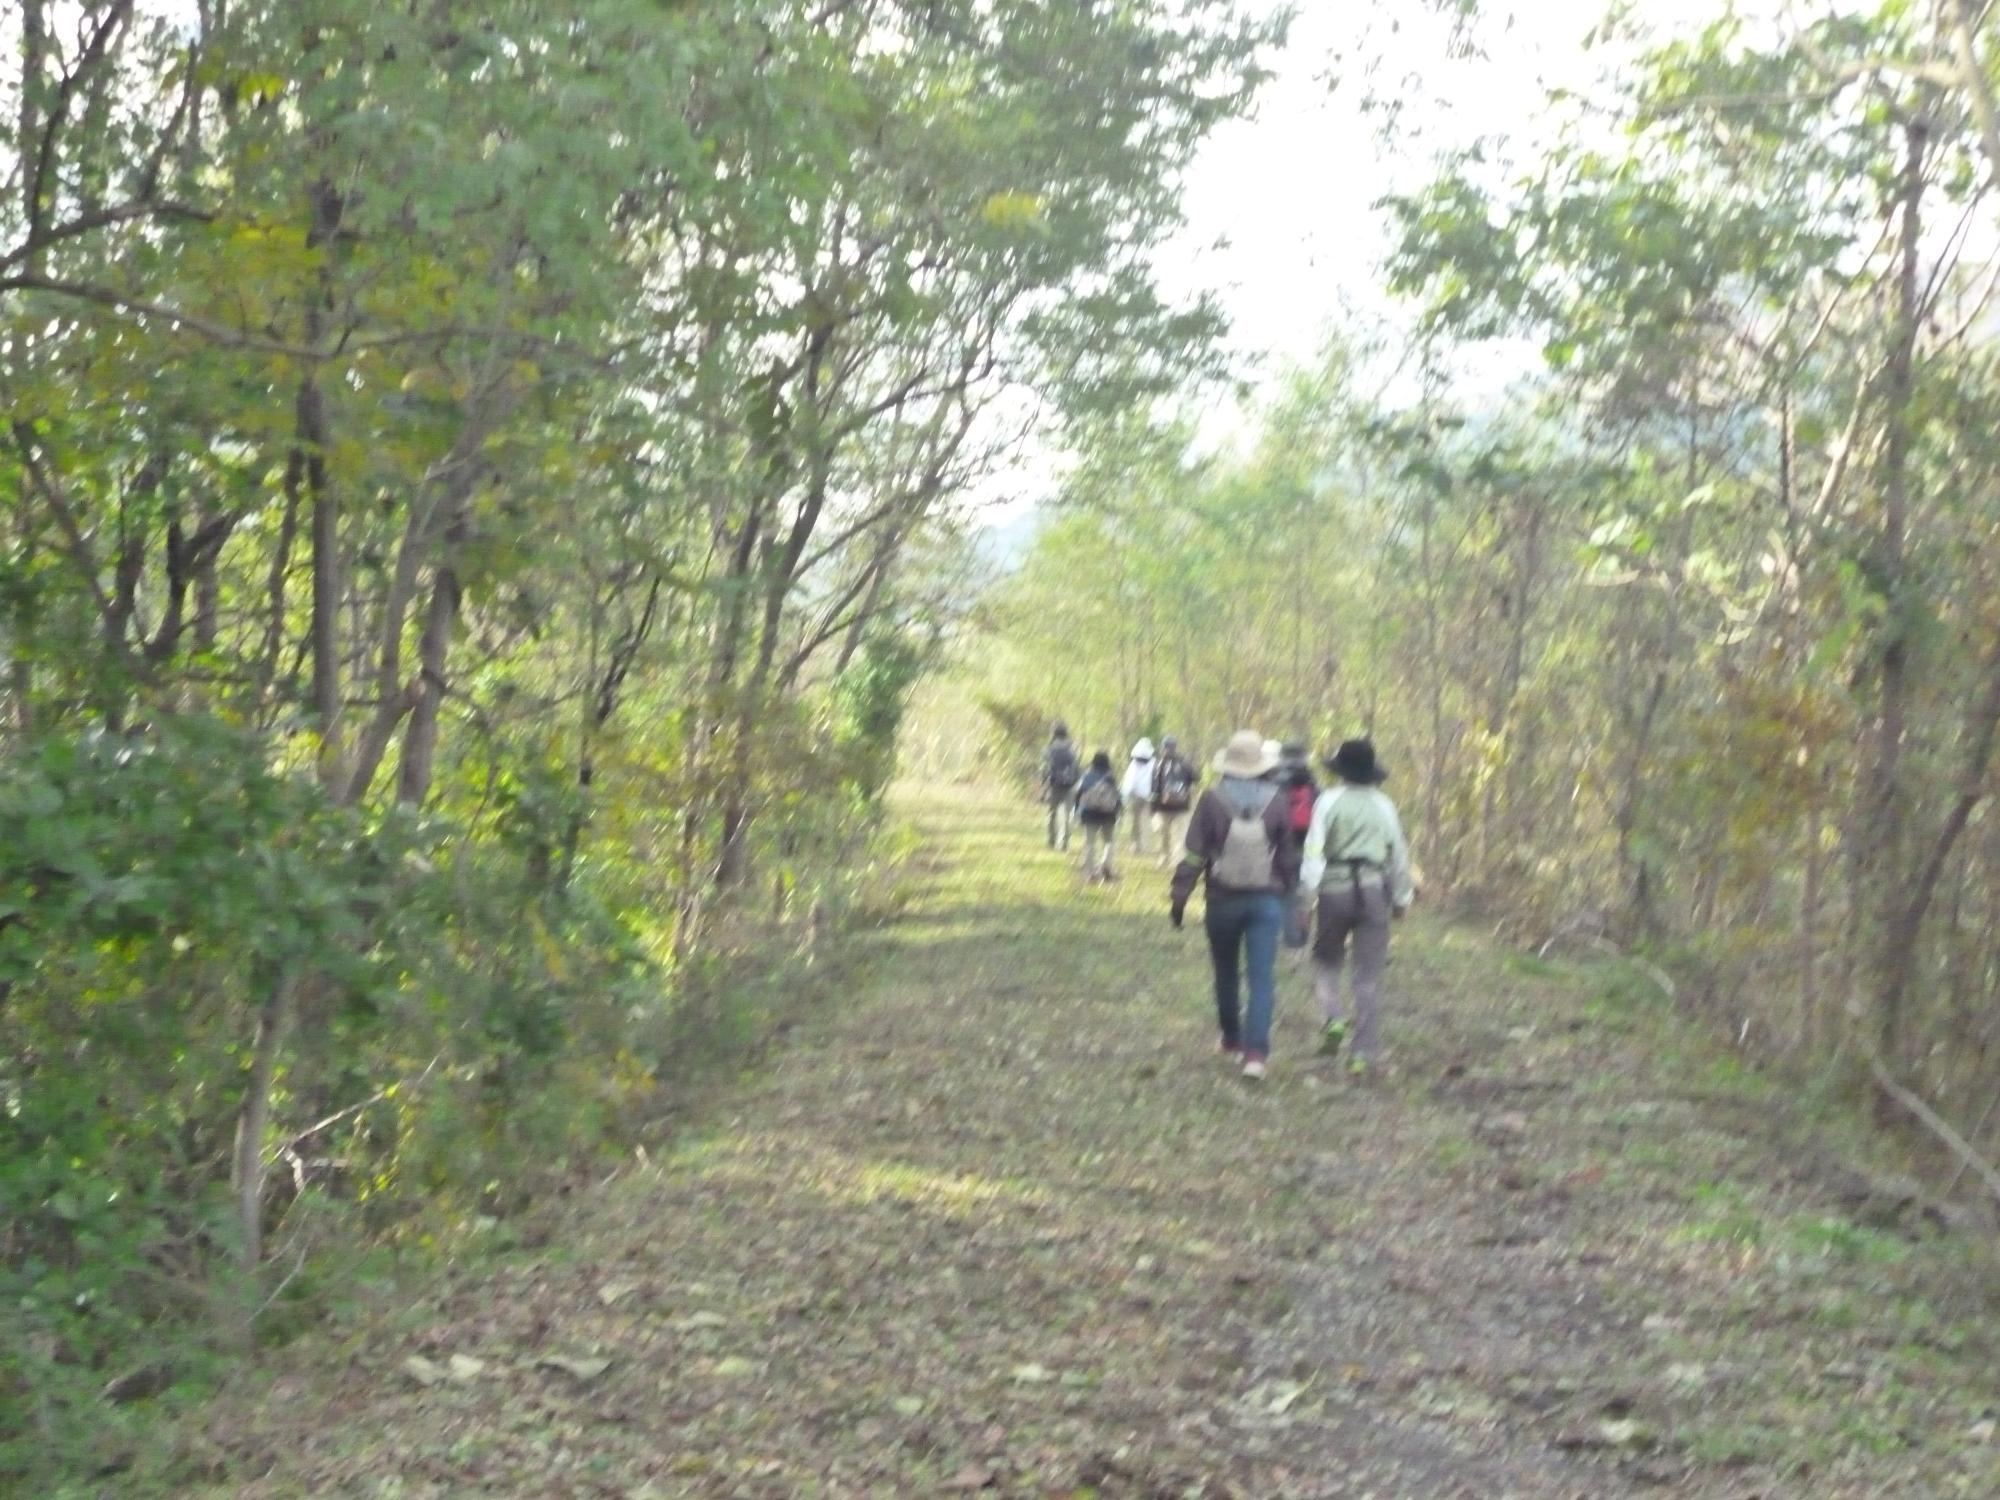 両側に木が植えられた舗装されていない道を参加者の方々が歩いている様子を後方より写した写真